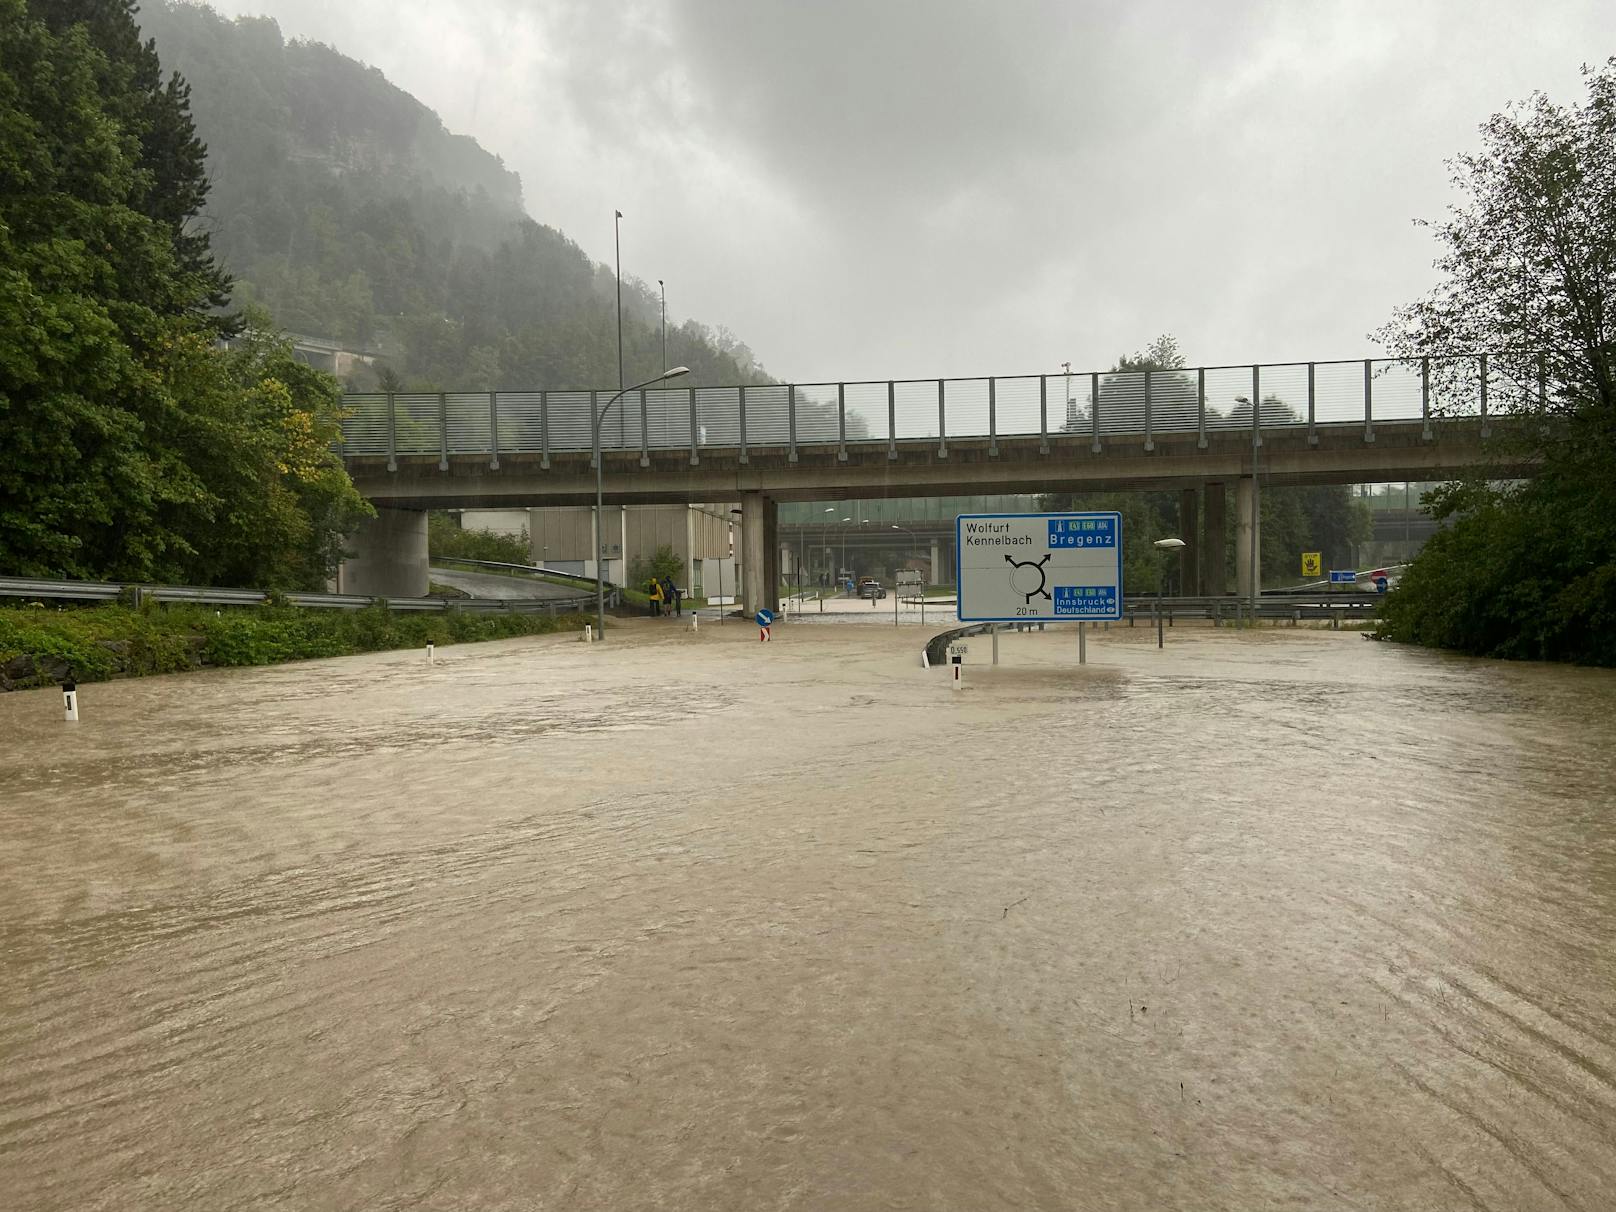 In der stark getroffenen Landeshauptstadt Bregenz standen ganzen Straßenzüge unter Wasser. Im Bild die Autobahnauffahrt Wolfurt.